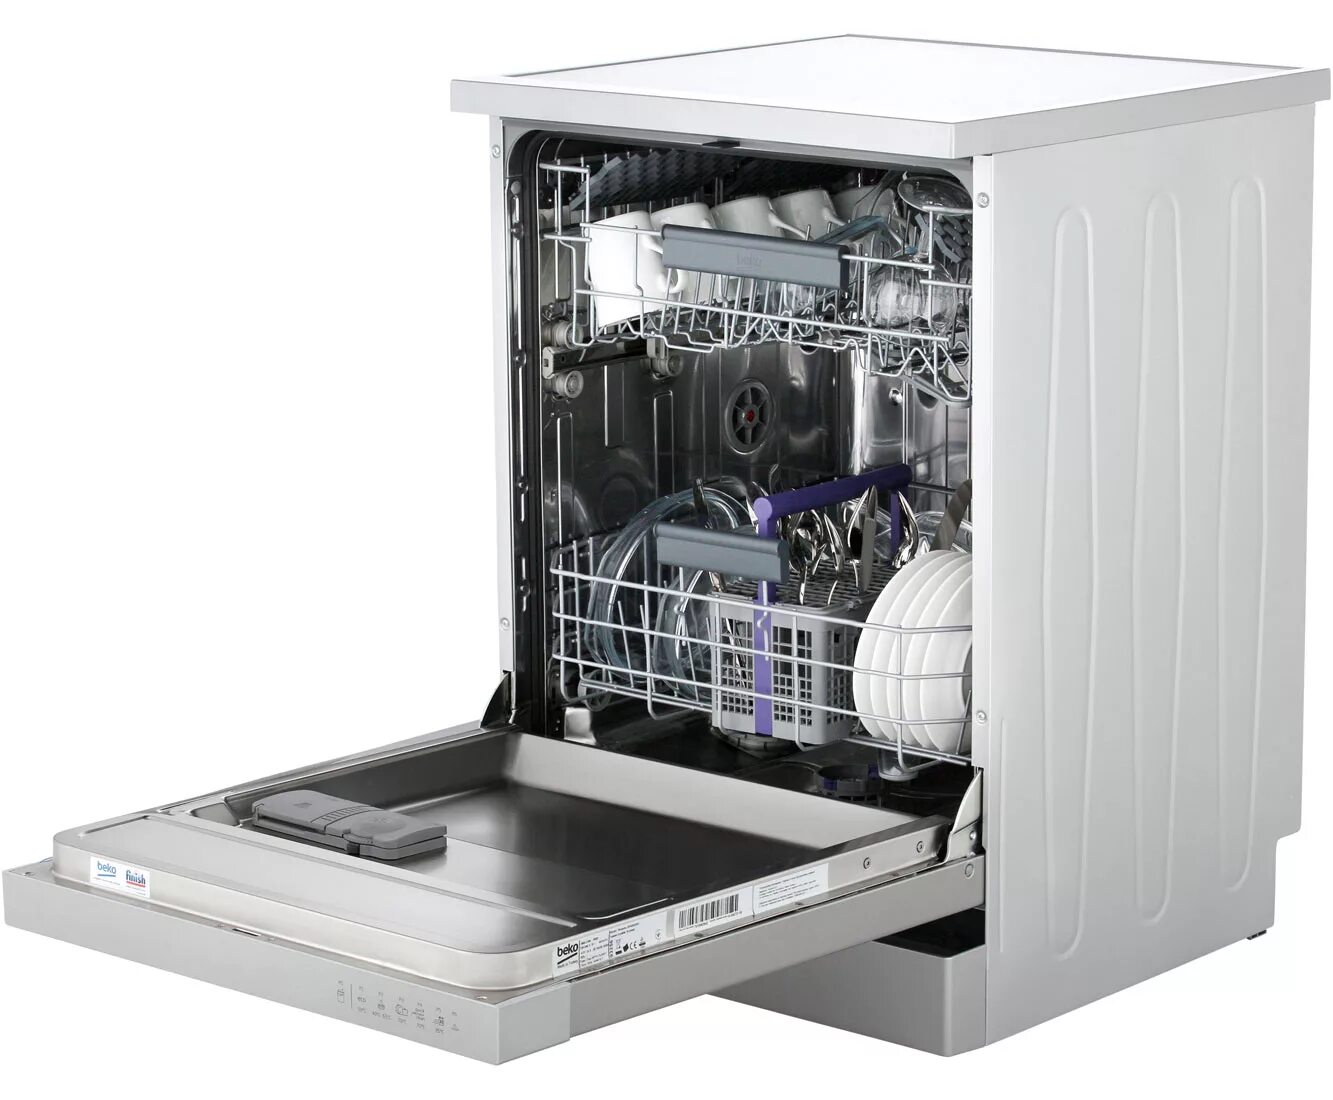 Посудомоечной машины 45 см топ лучших. Посудомоечная машина Miele g 603 SCVI Plus. Посудомойка super XL 450. Посудомойка g5210 ci. Посудомоечная машина g5690 SCVI 45 см.